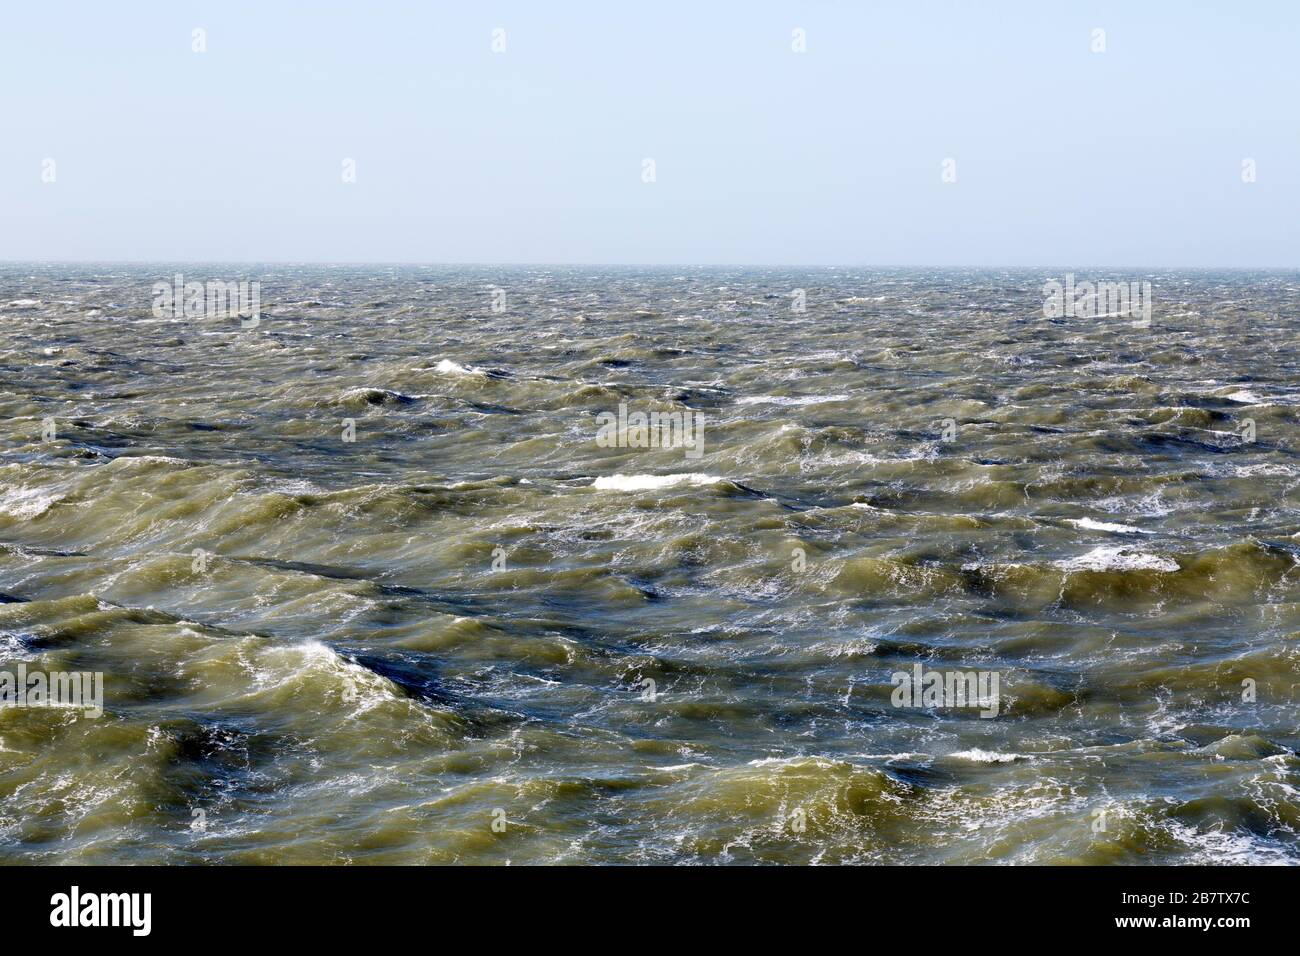 Il Mare del Nord nelle acque internazionali. Le onde sono capovolte da cappucci bianchi. Foto Stock